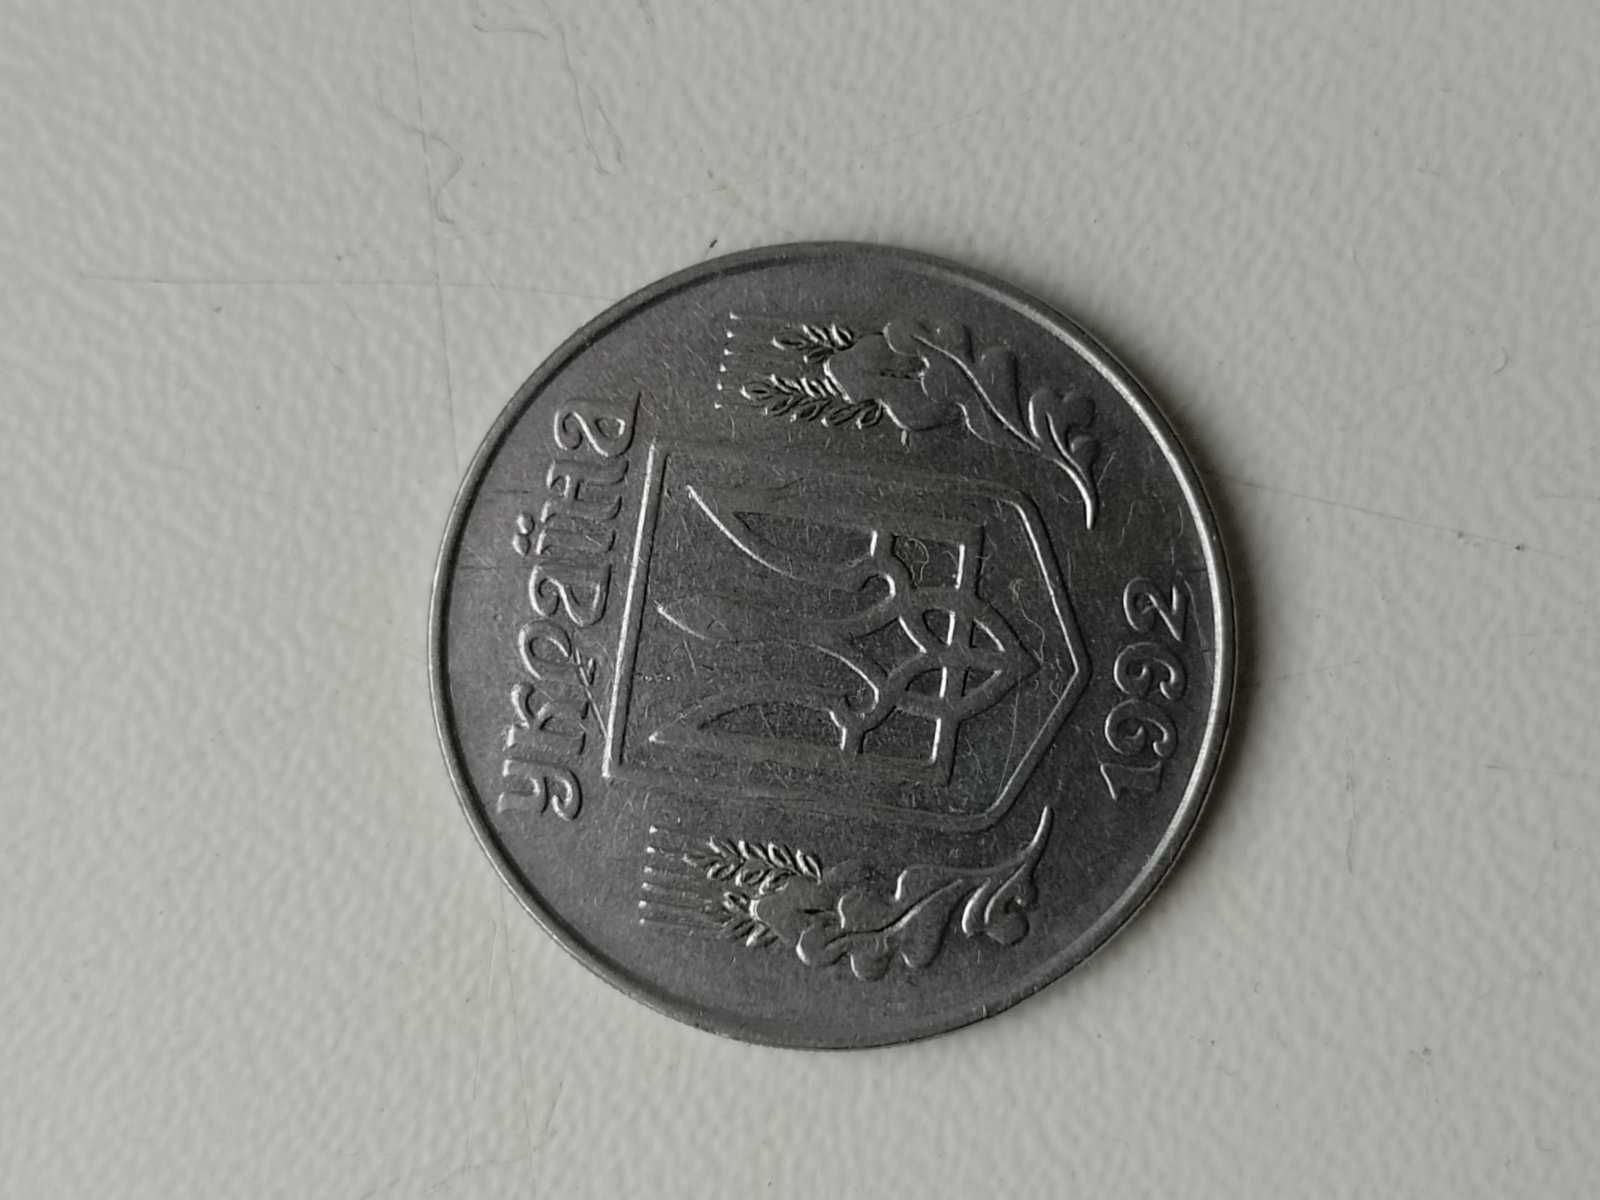 5 копійок 1992 року - обігова монета України.